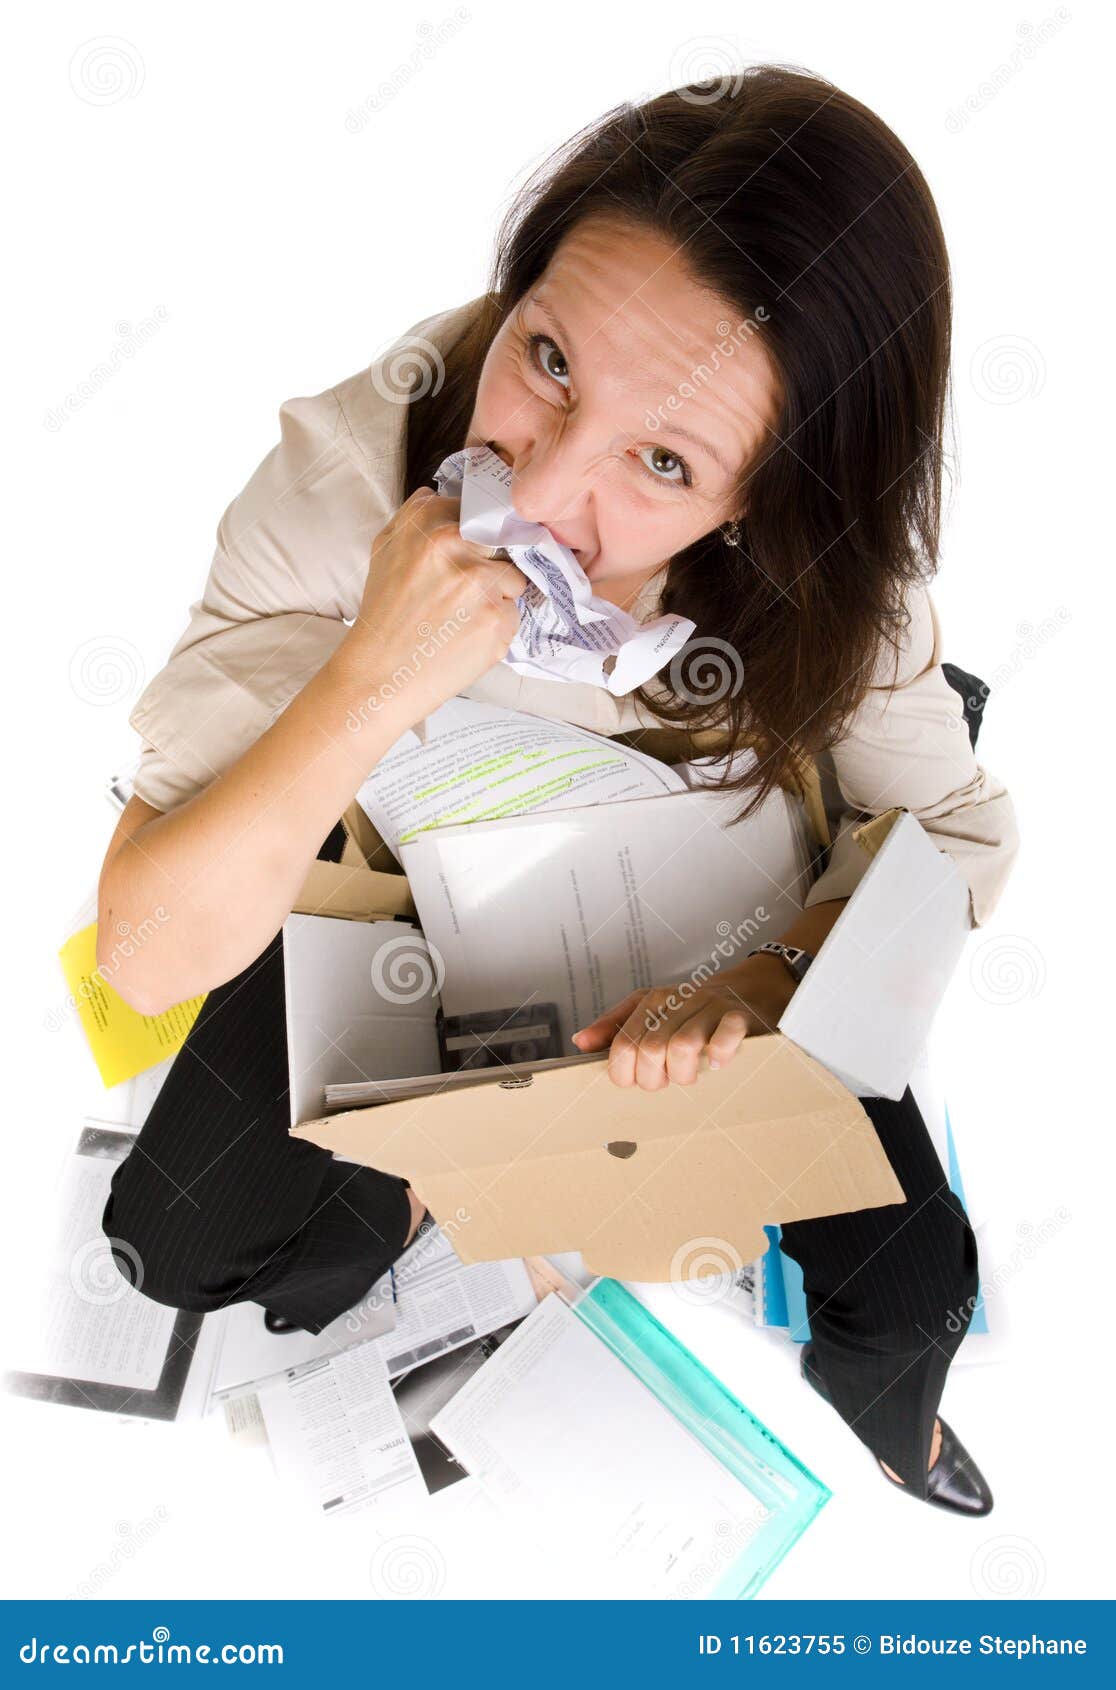 Жую бумагу почему. Ест бумагу. Человек ест бумагу. Женщина ест бумагу. Бухгалтер в бумагах.